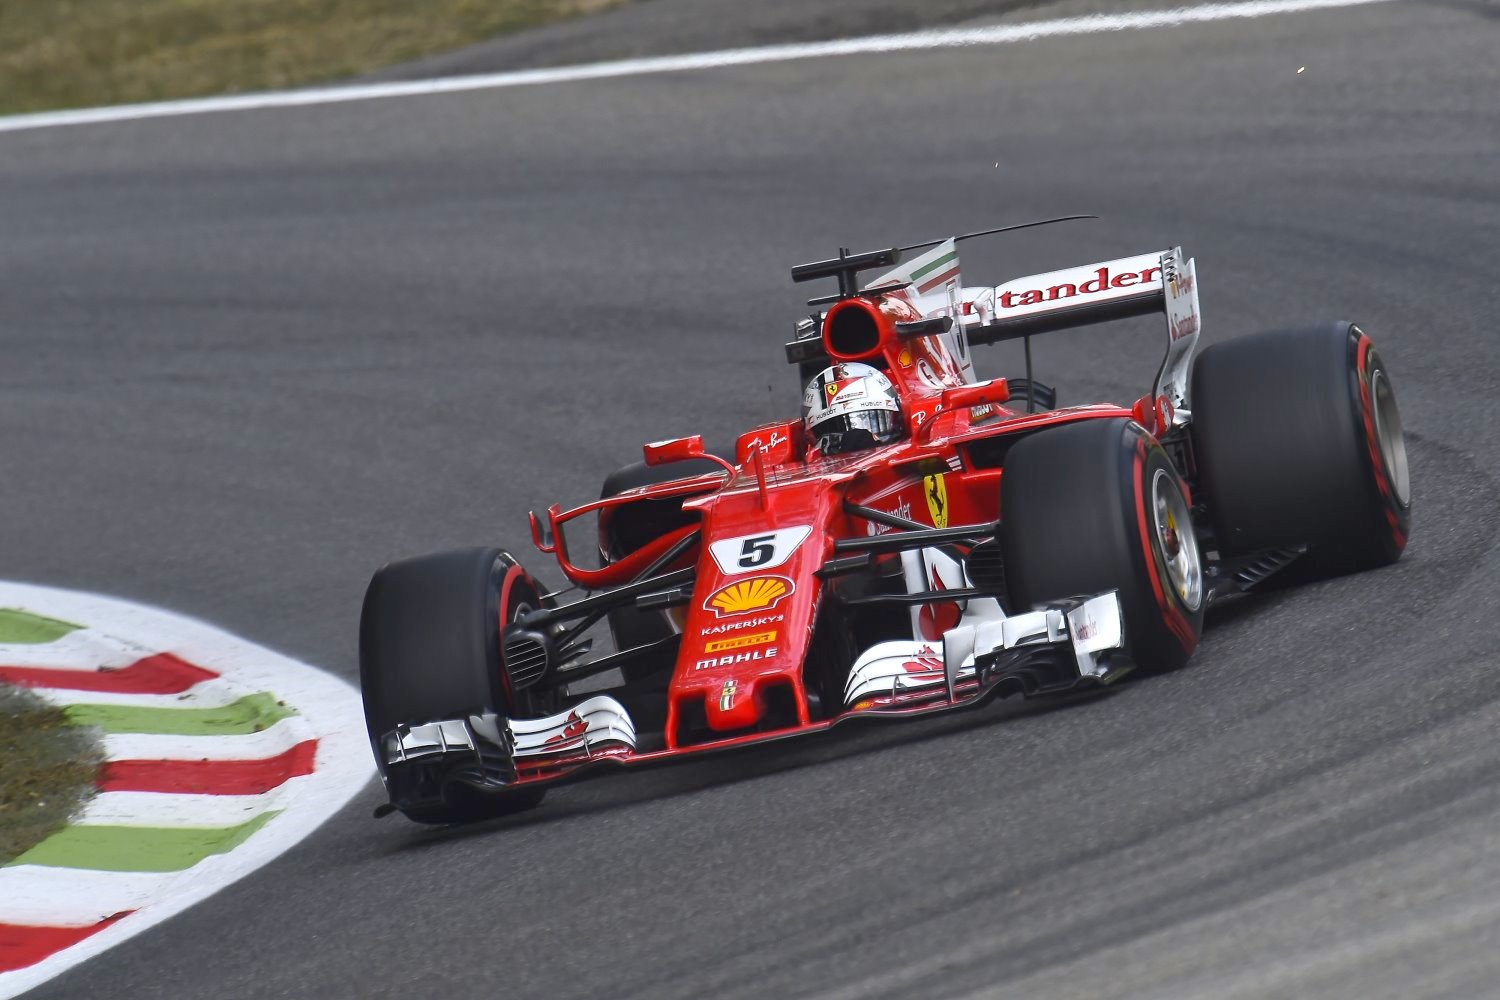 Vettel was third quick for Ferrari